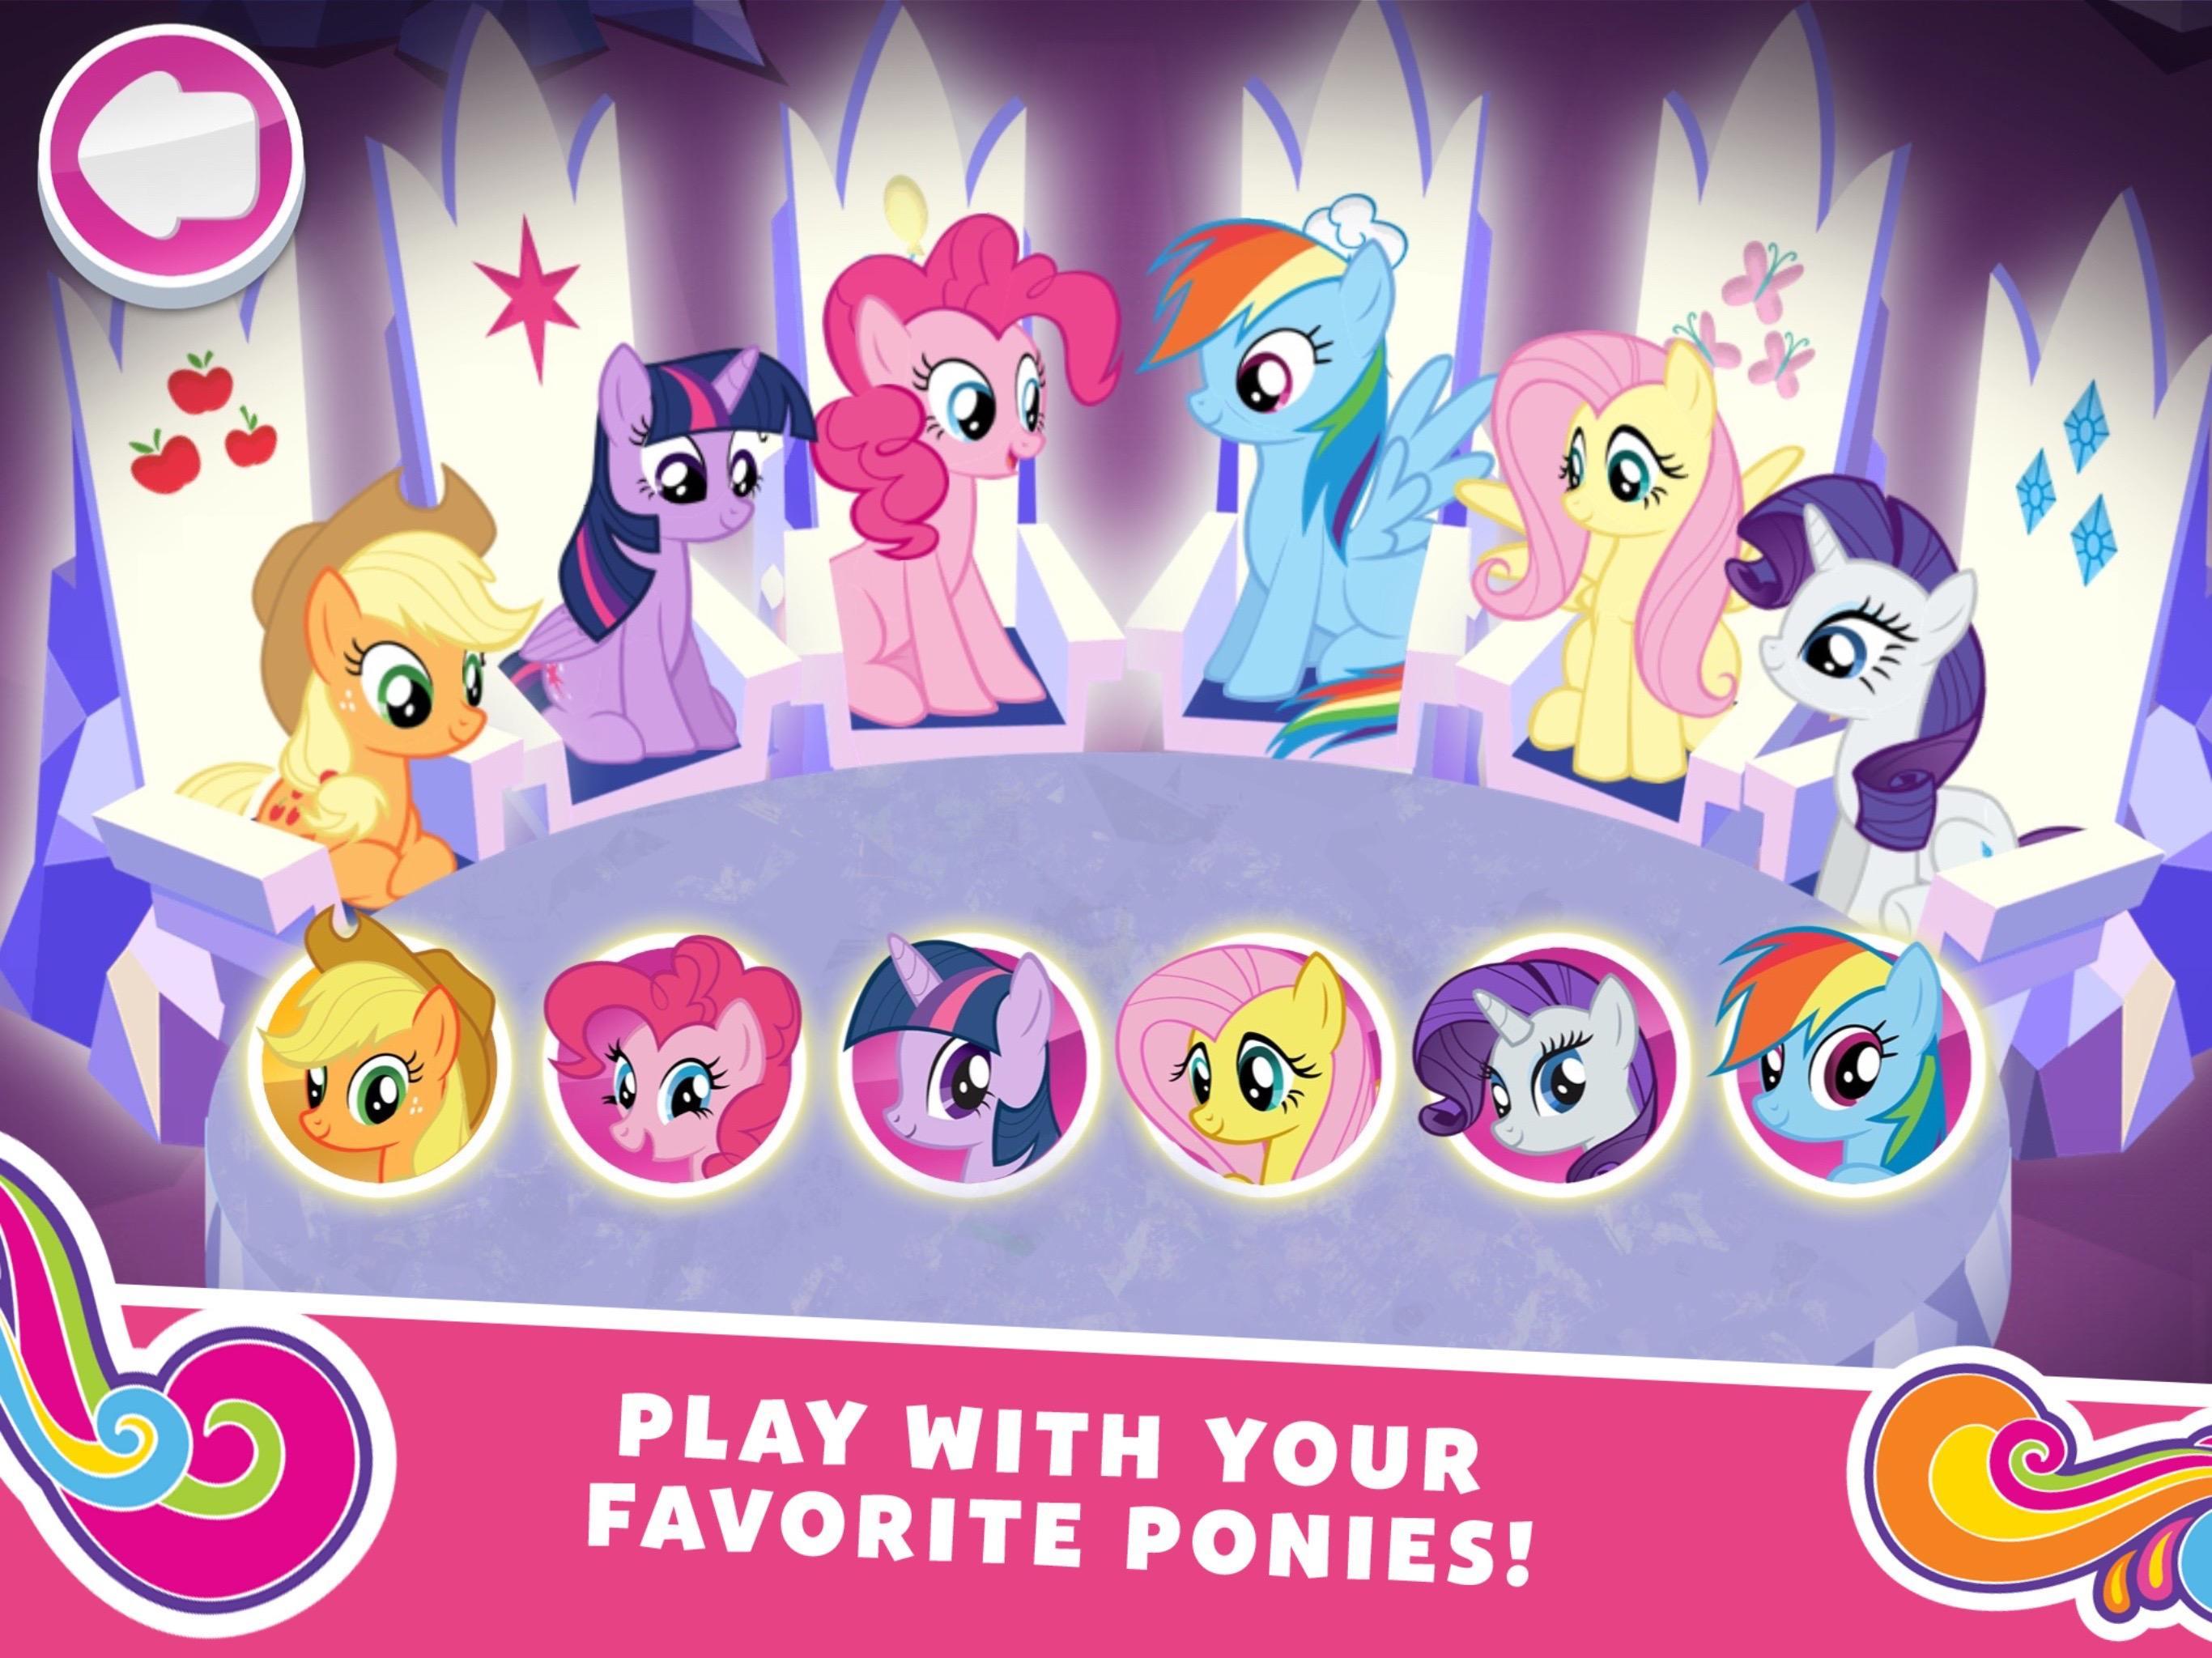 My little pony harmony. My little Pony миссия гармонии. Игра my little Pony миссия гармонии. Андроид my little Pony: Harmony Quest. Игры пони Гармония.